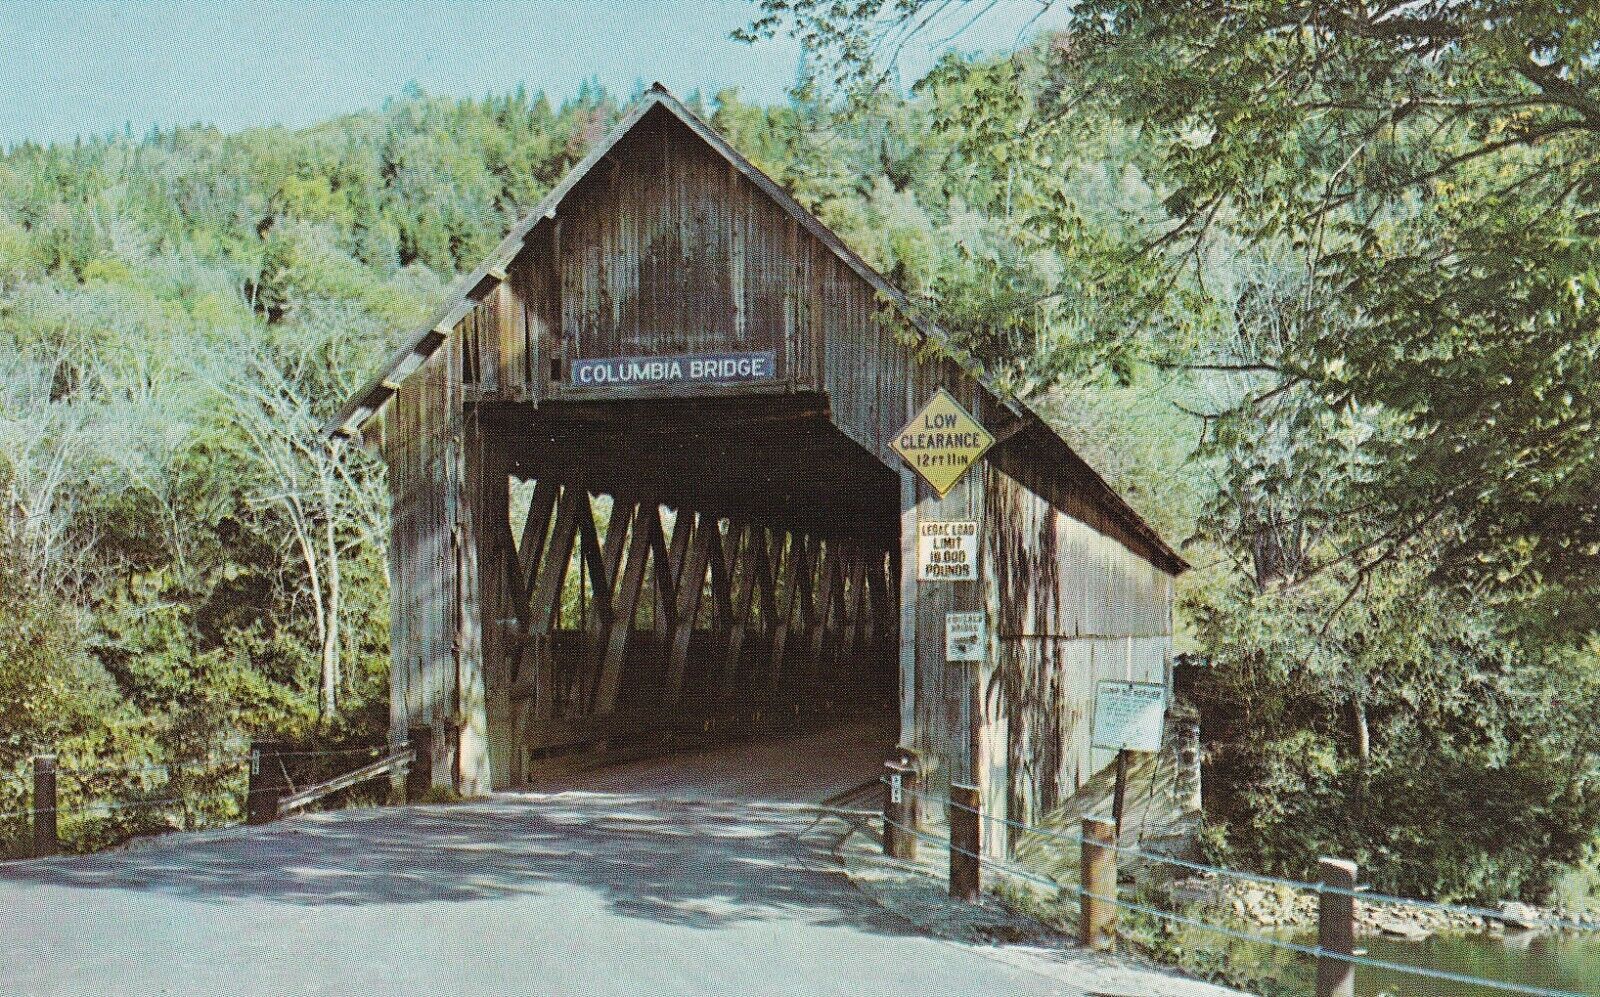 Covered Bridge, Columbia, New Hampshire to Lemington, Vermont